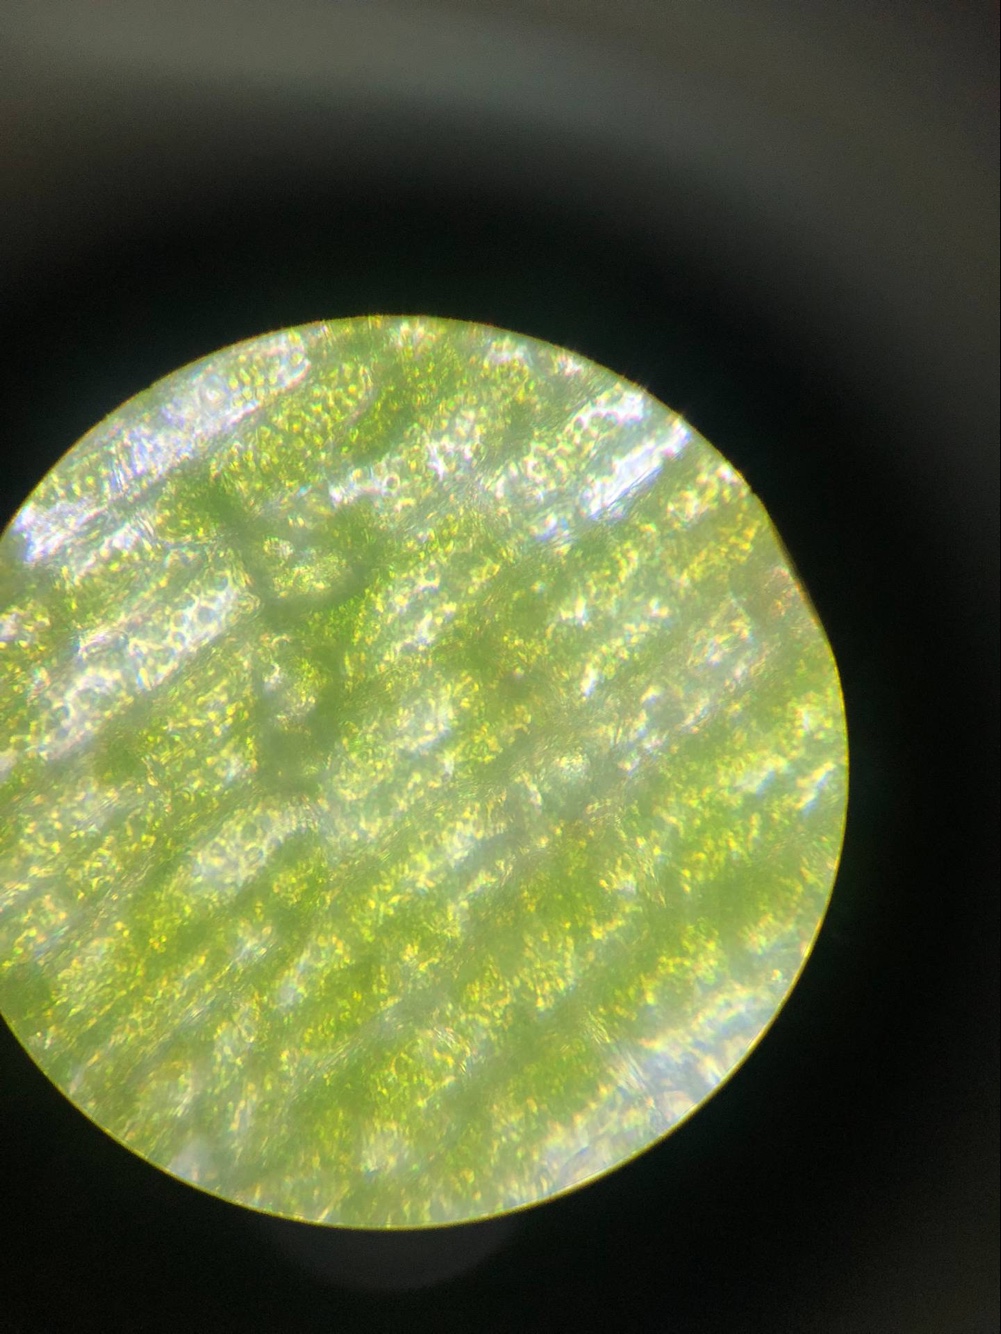 植物细胞 感谢黑藻君提供的叶子 请大家欣赏绿了吧唧的黑藻 接下来是